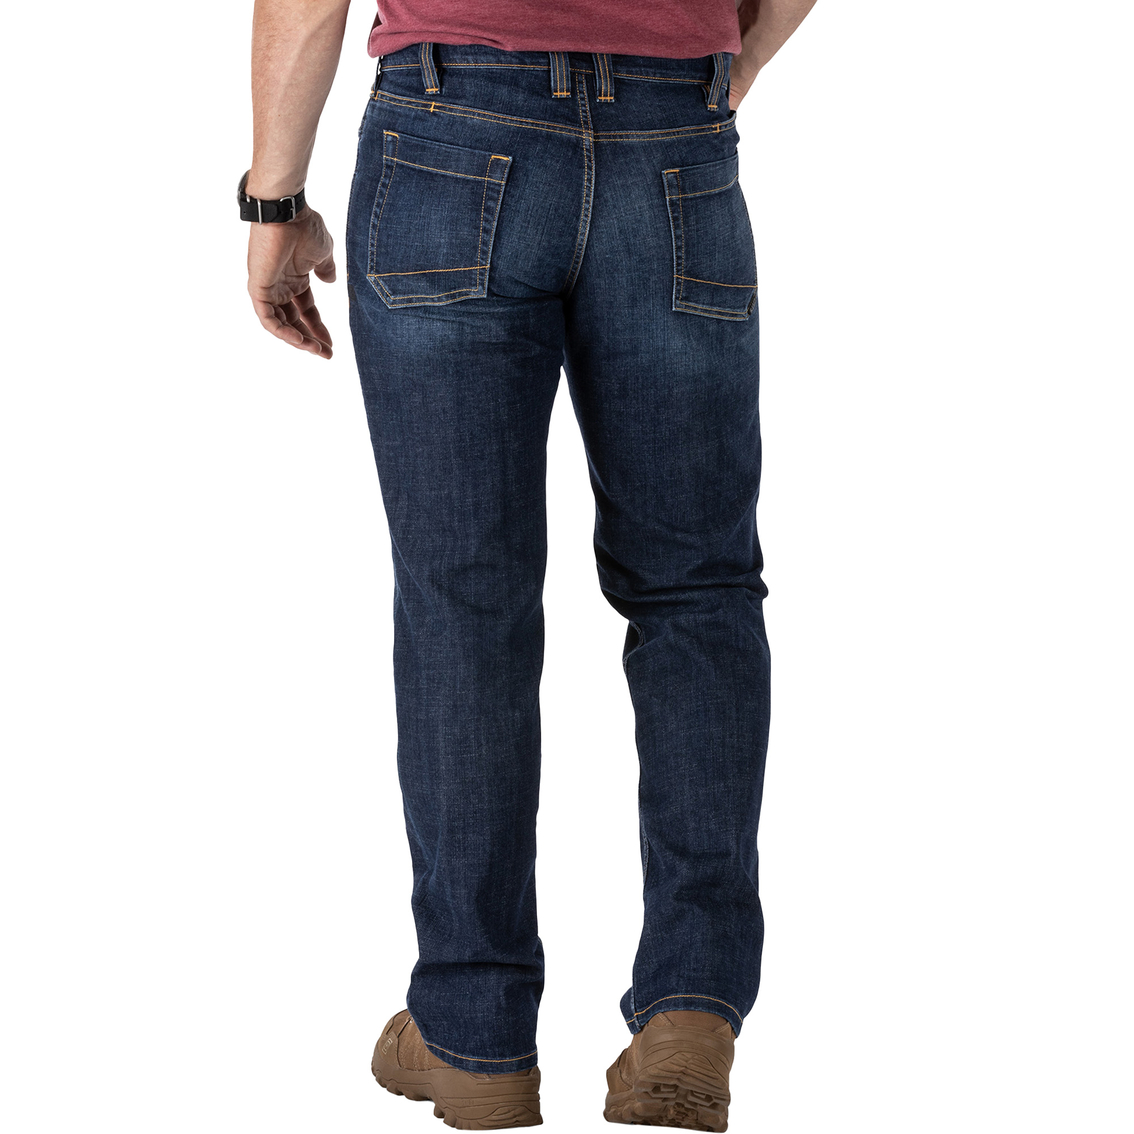 5.11 Regular Fit Defender Flex Jeans - Image 2 of 5